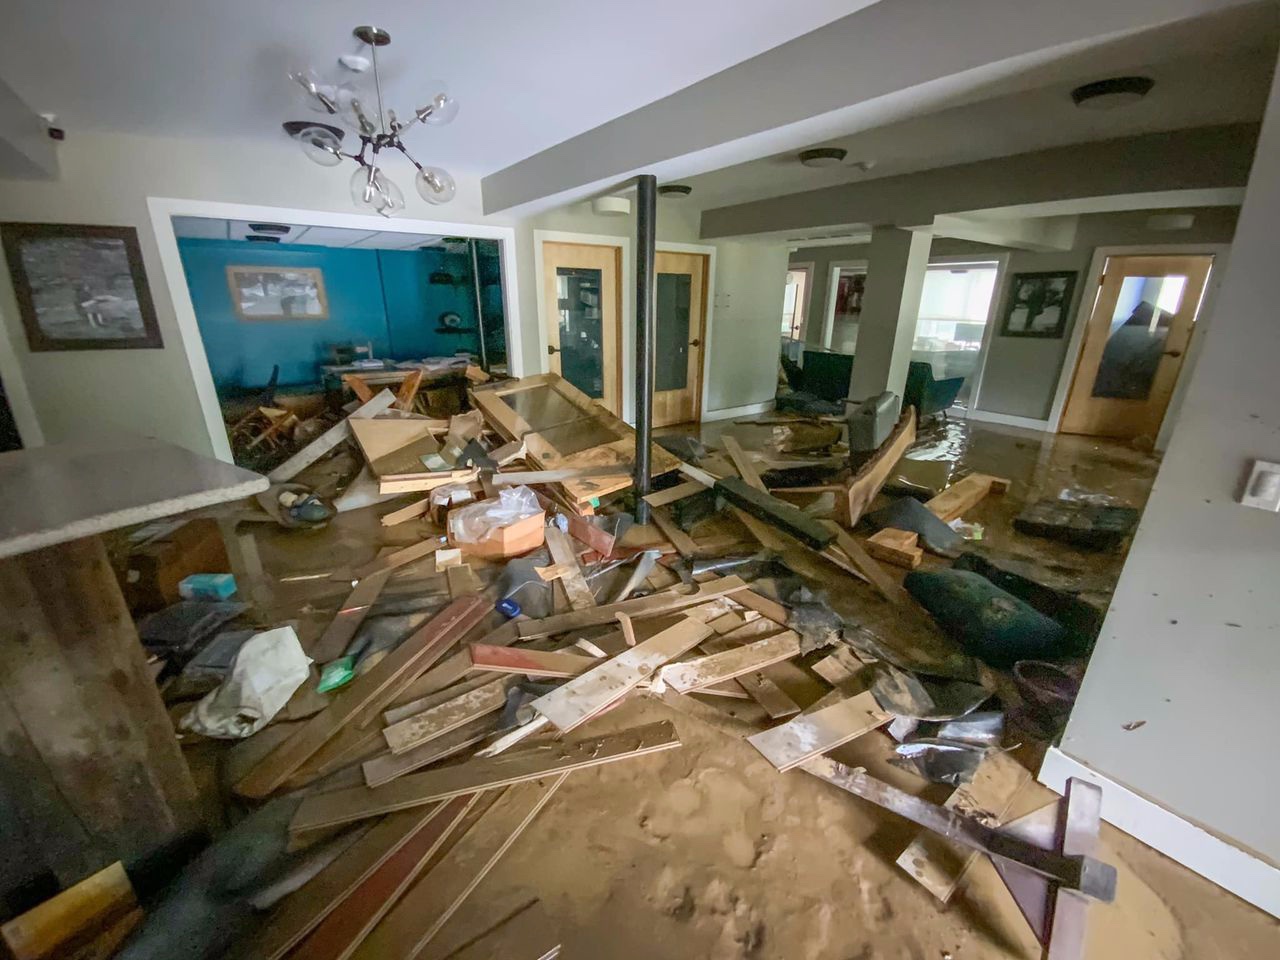 eastern ky flooding damage inside a home